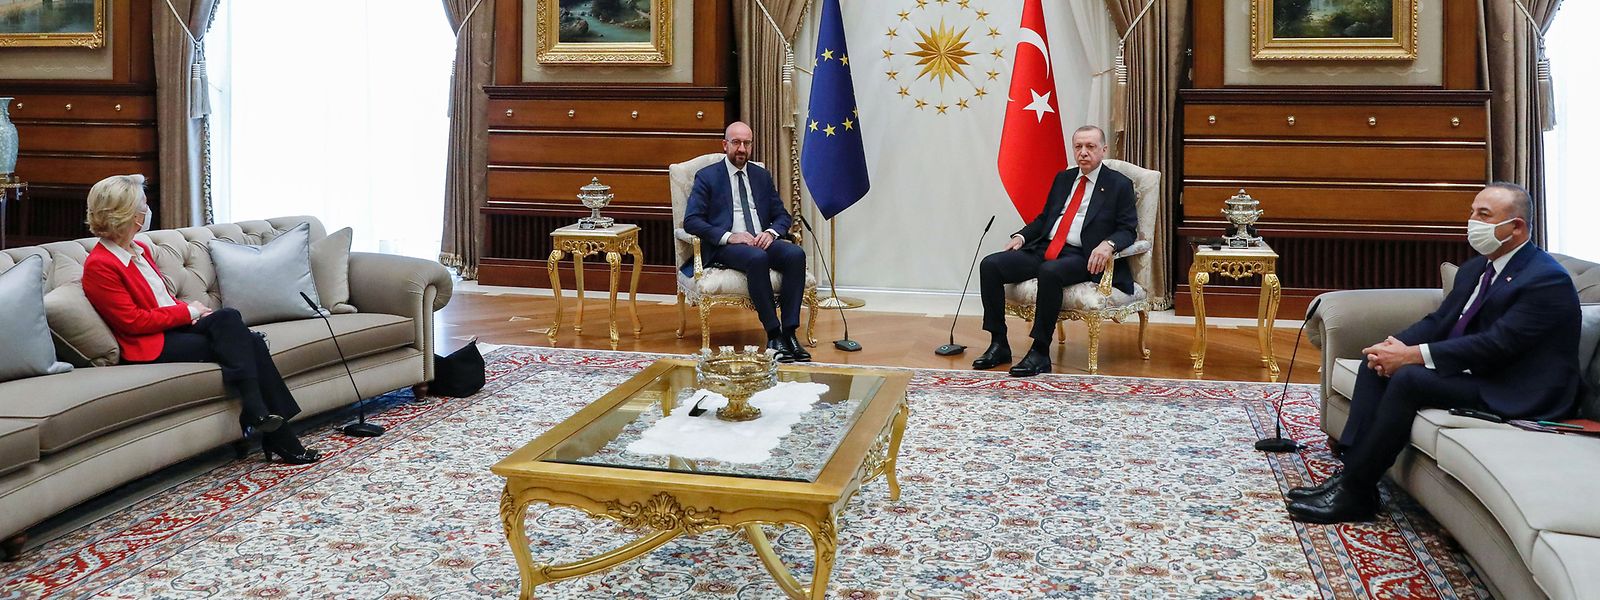 Von der Leyen sitzt auf dem Sofa, gegenüber von dem türkischen Außenminister Mevlut Cavusoglu.